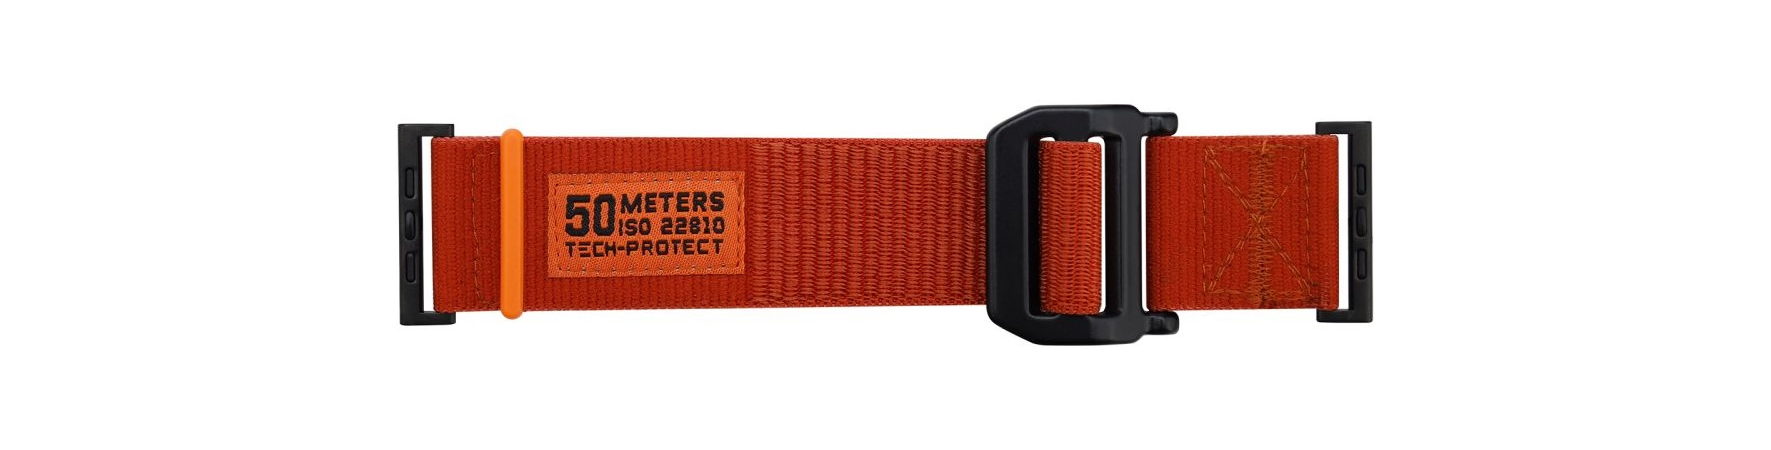 Ремешок TECH-PROTECT SCOUT APPLE WATCH 45/49 MM ORANGE, Цвет: Orange / Оранжевый, изображение 3